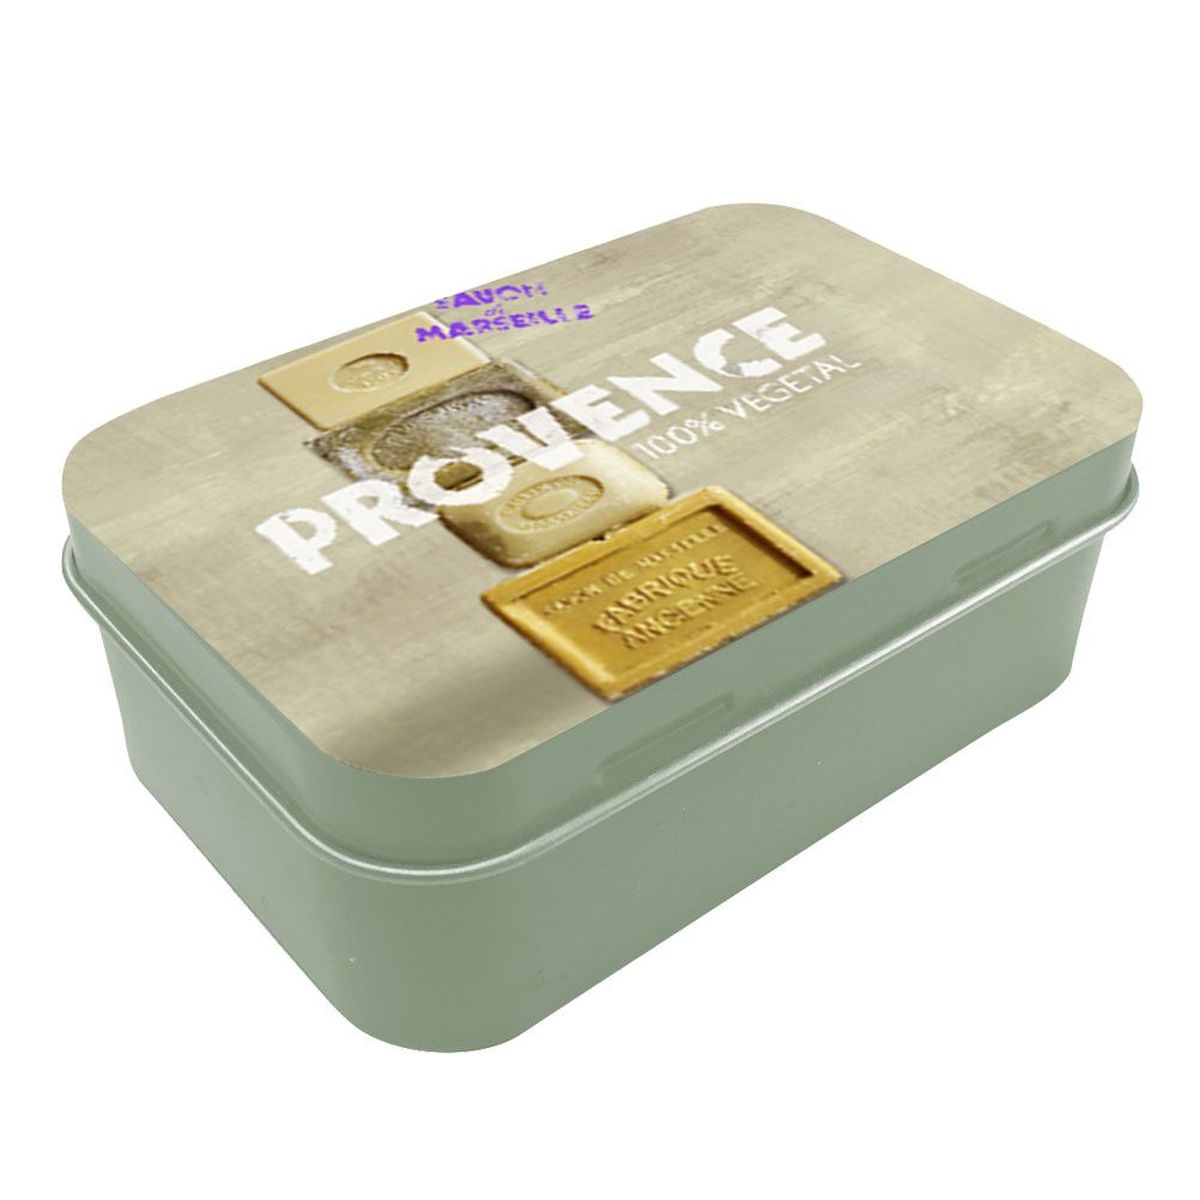 Provence soap box - Marseille soap 10 x 6.5 x 3.5 cm